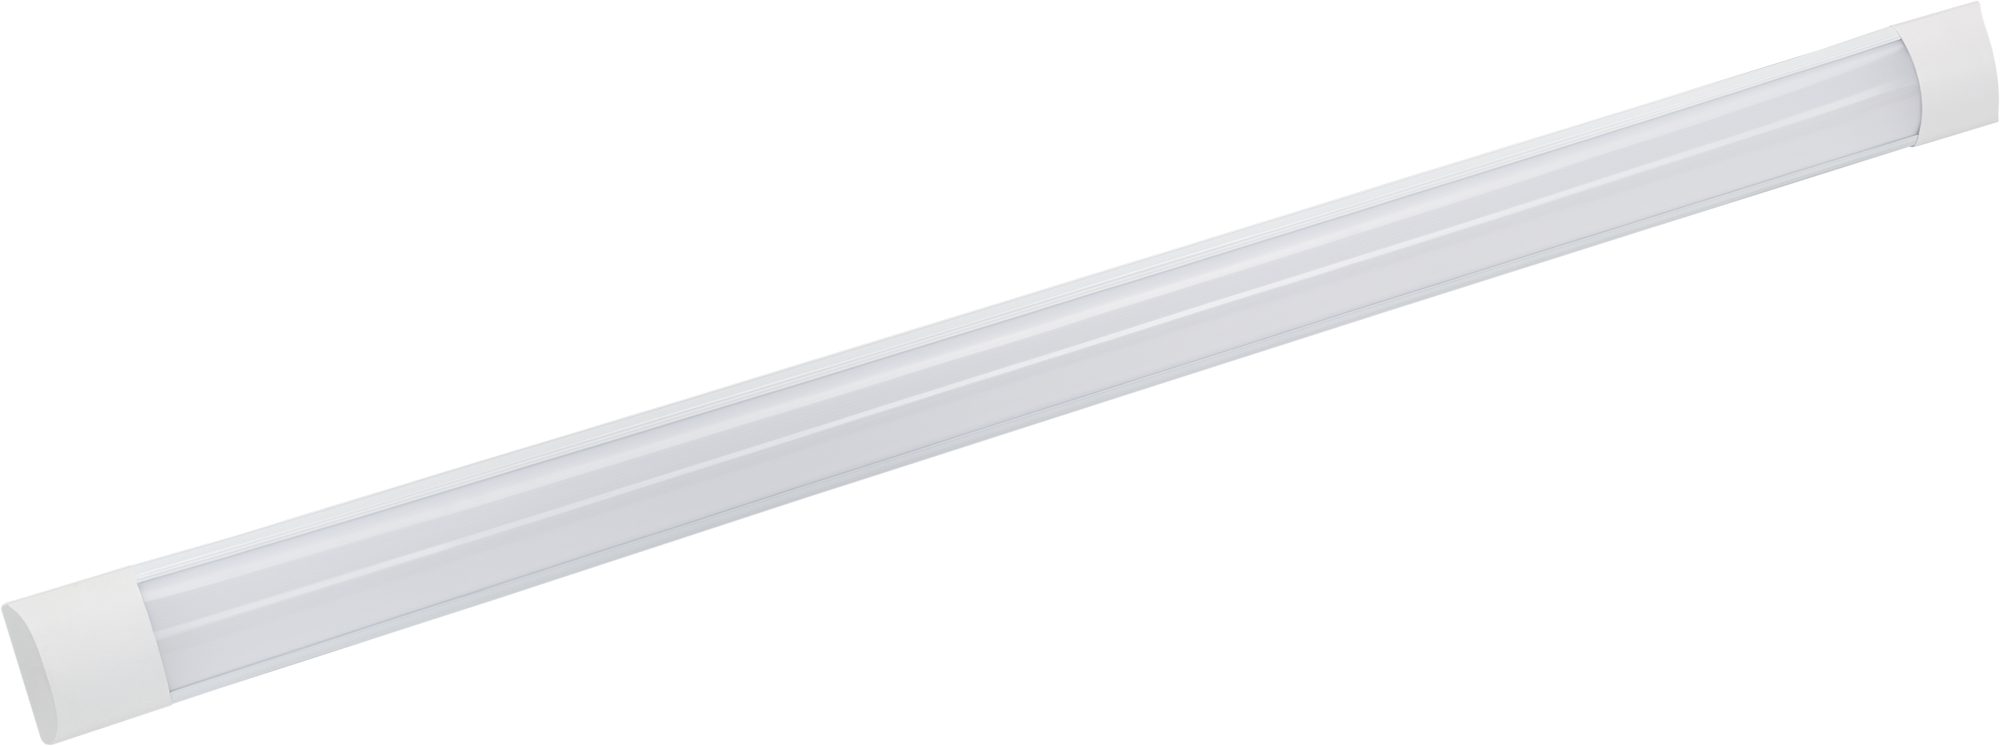 Светильник линейный светодиодный Gauss 1200 мм 36 Вт холодный белый .